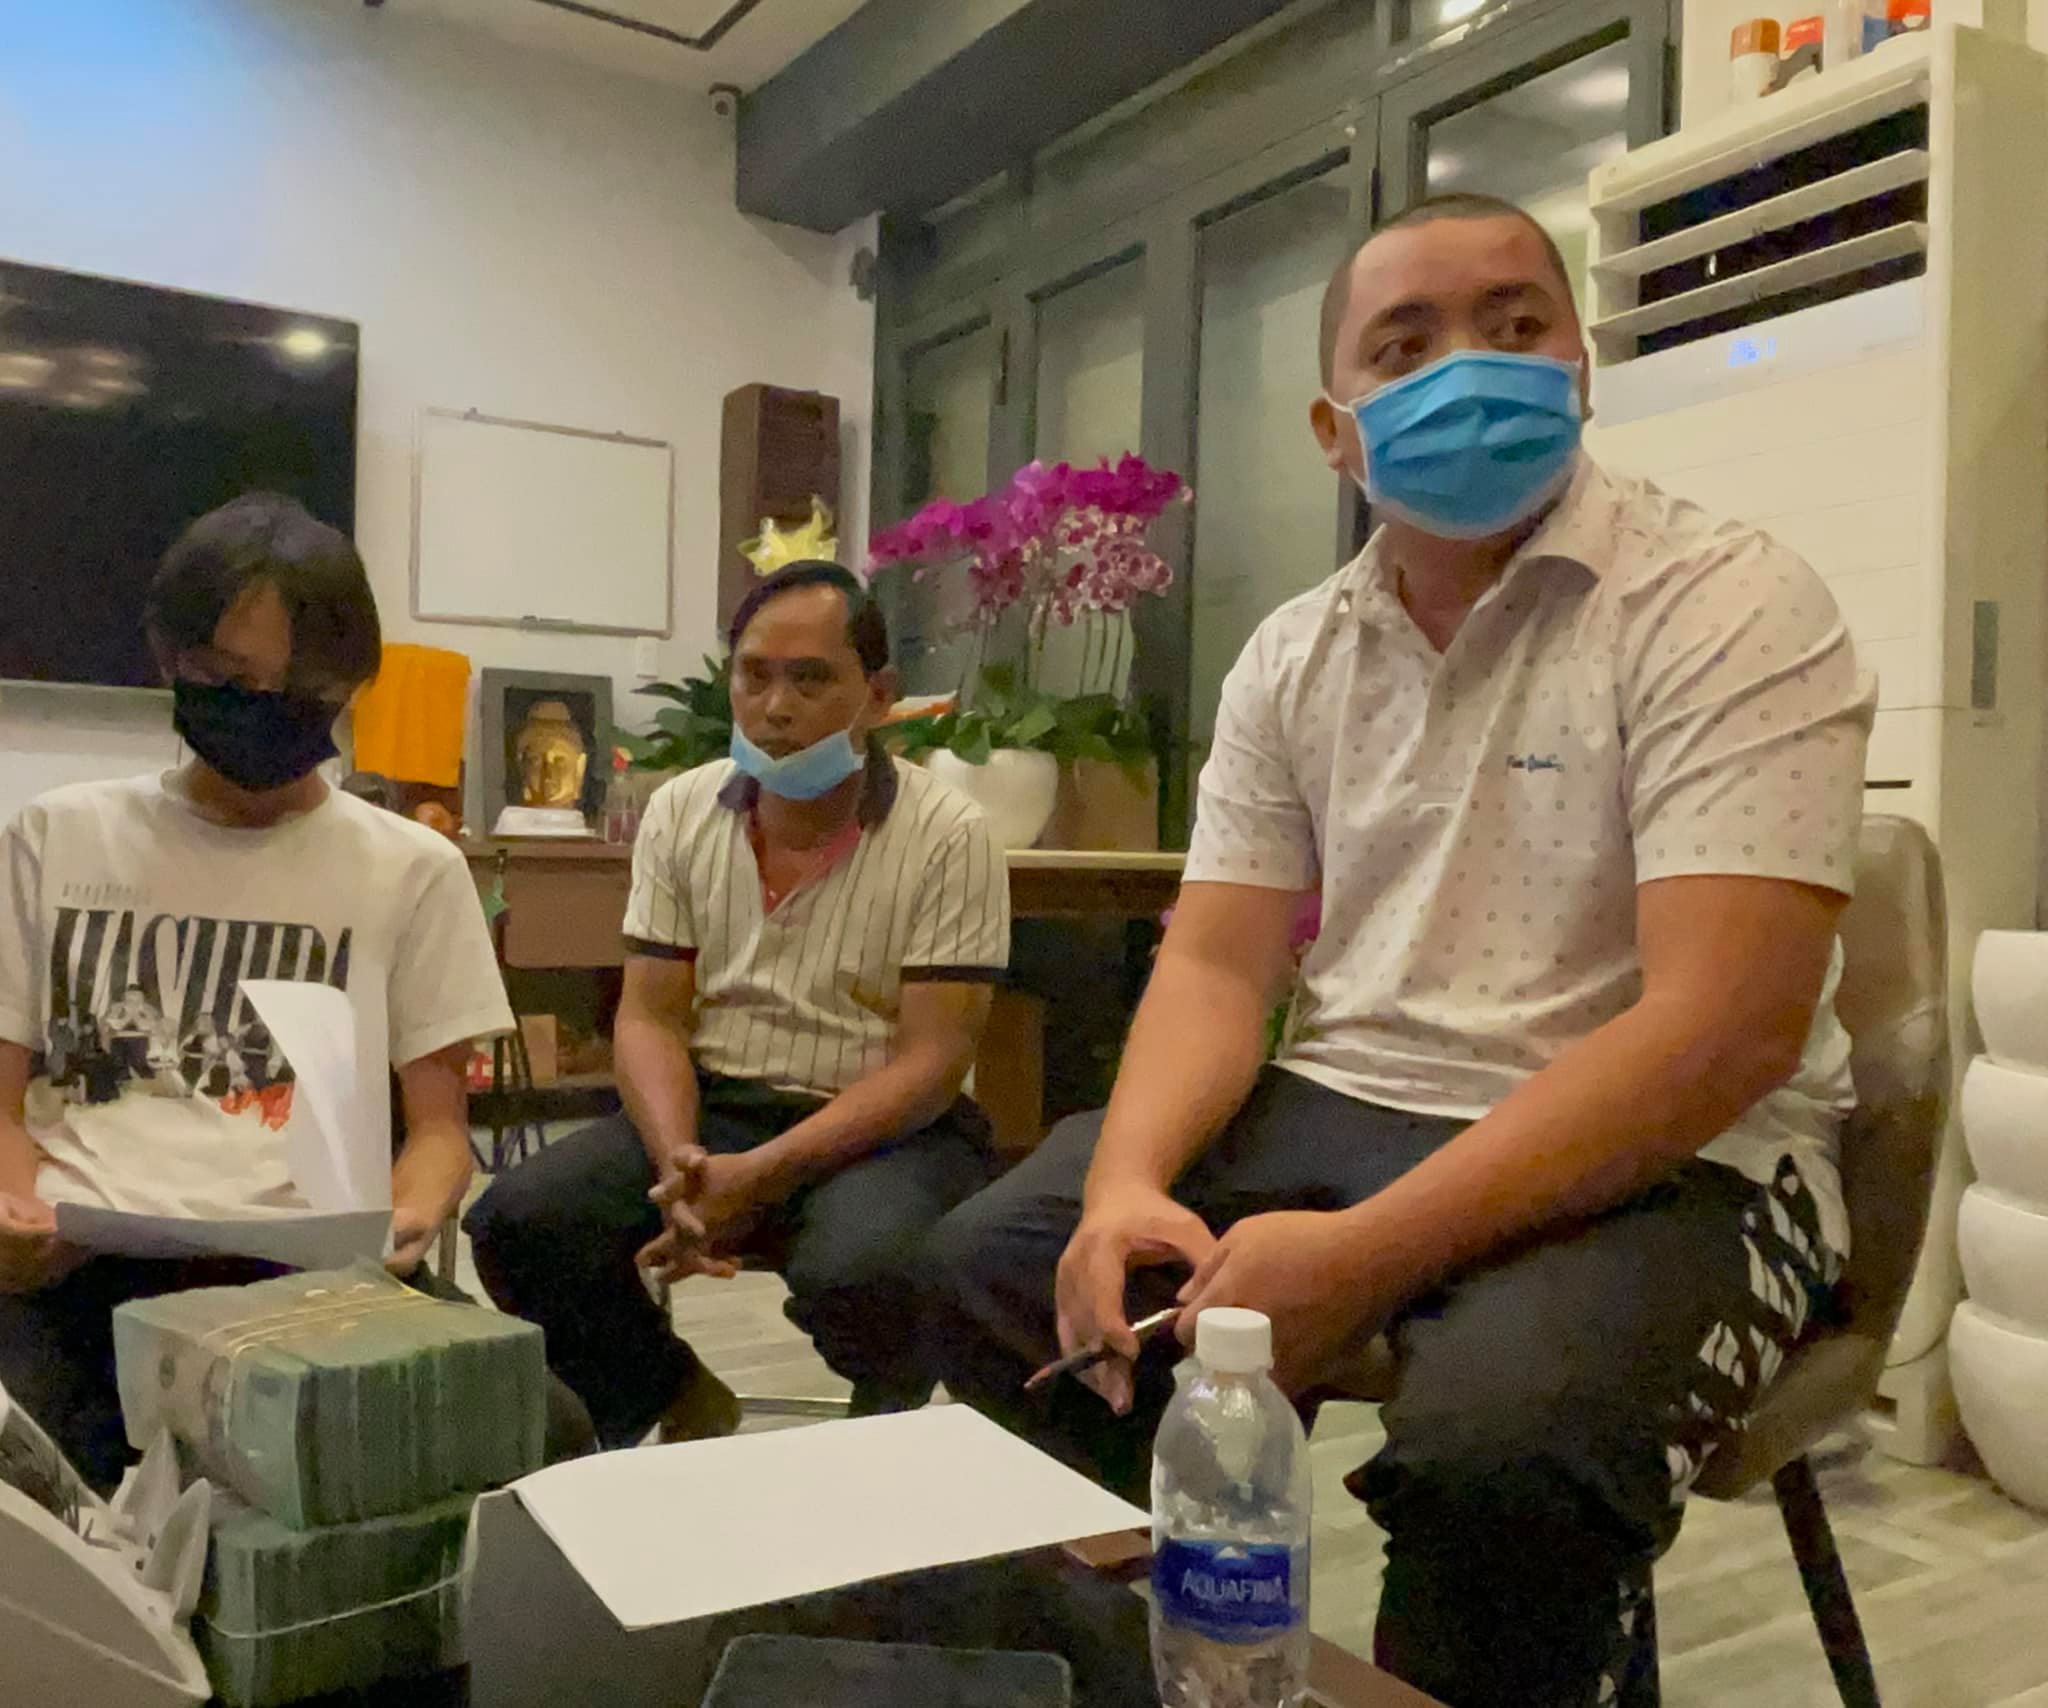 Hồ Văn Cường cùng người thân trong gia đình nhận tiền từ quản lý cố ca sĩ Phi Nhung